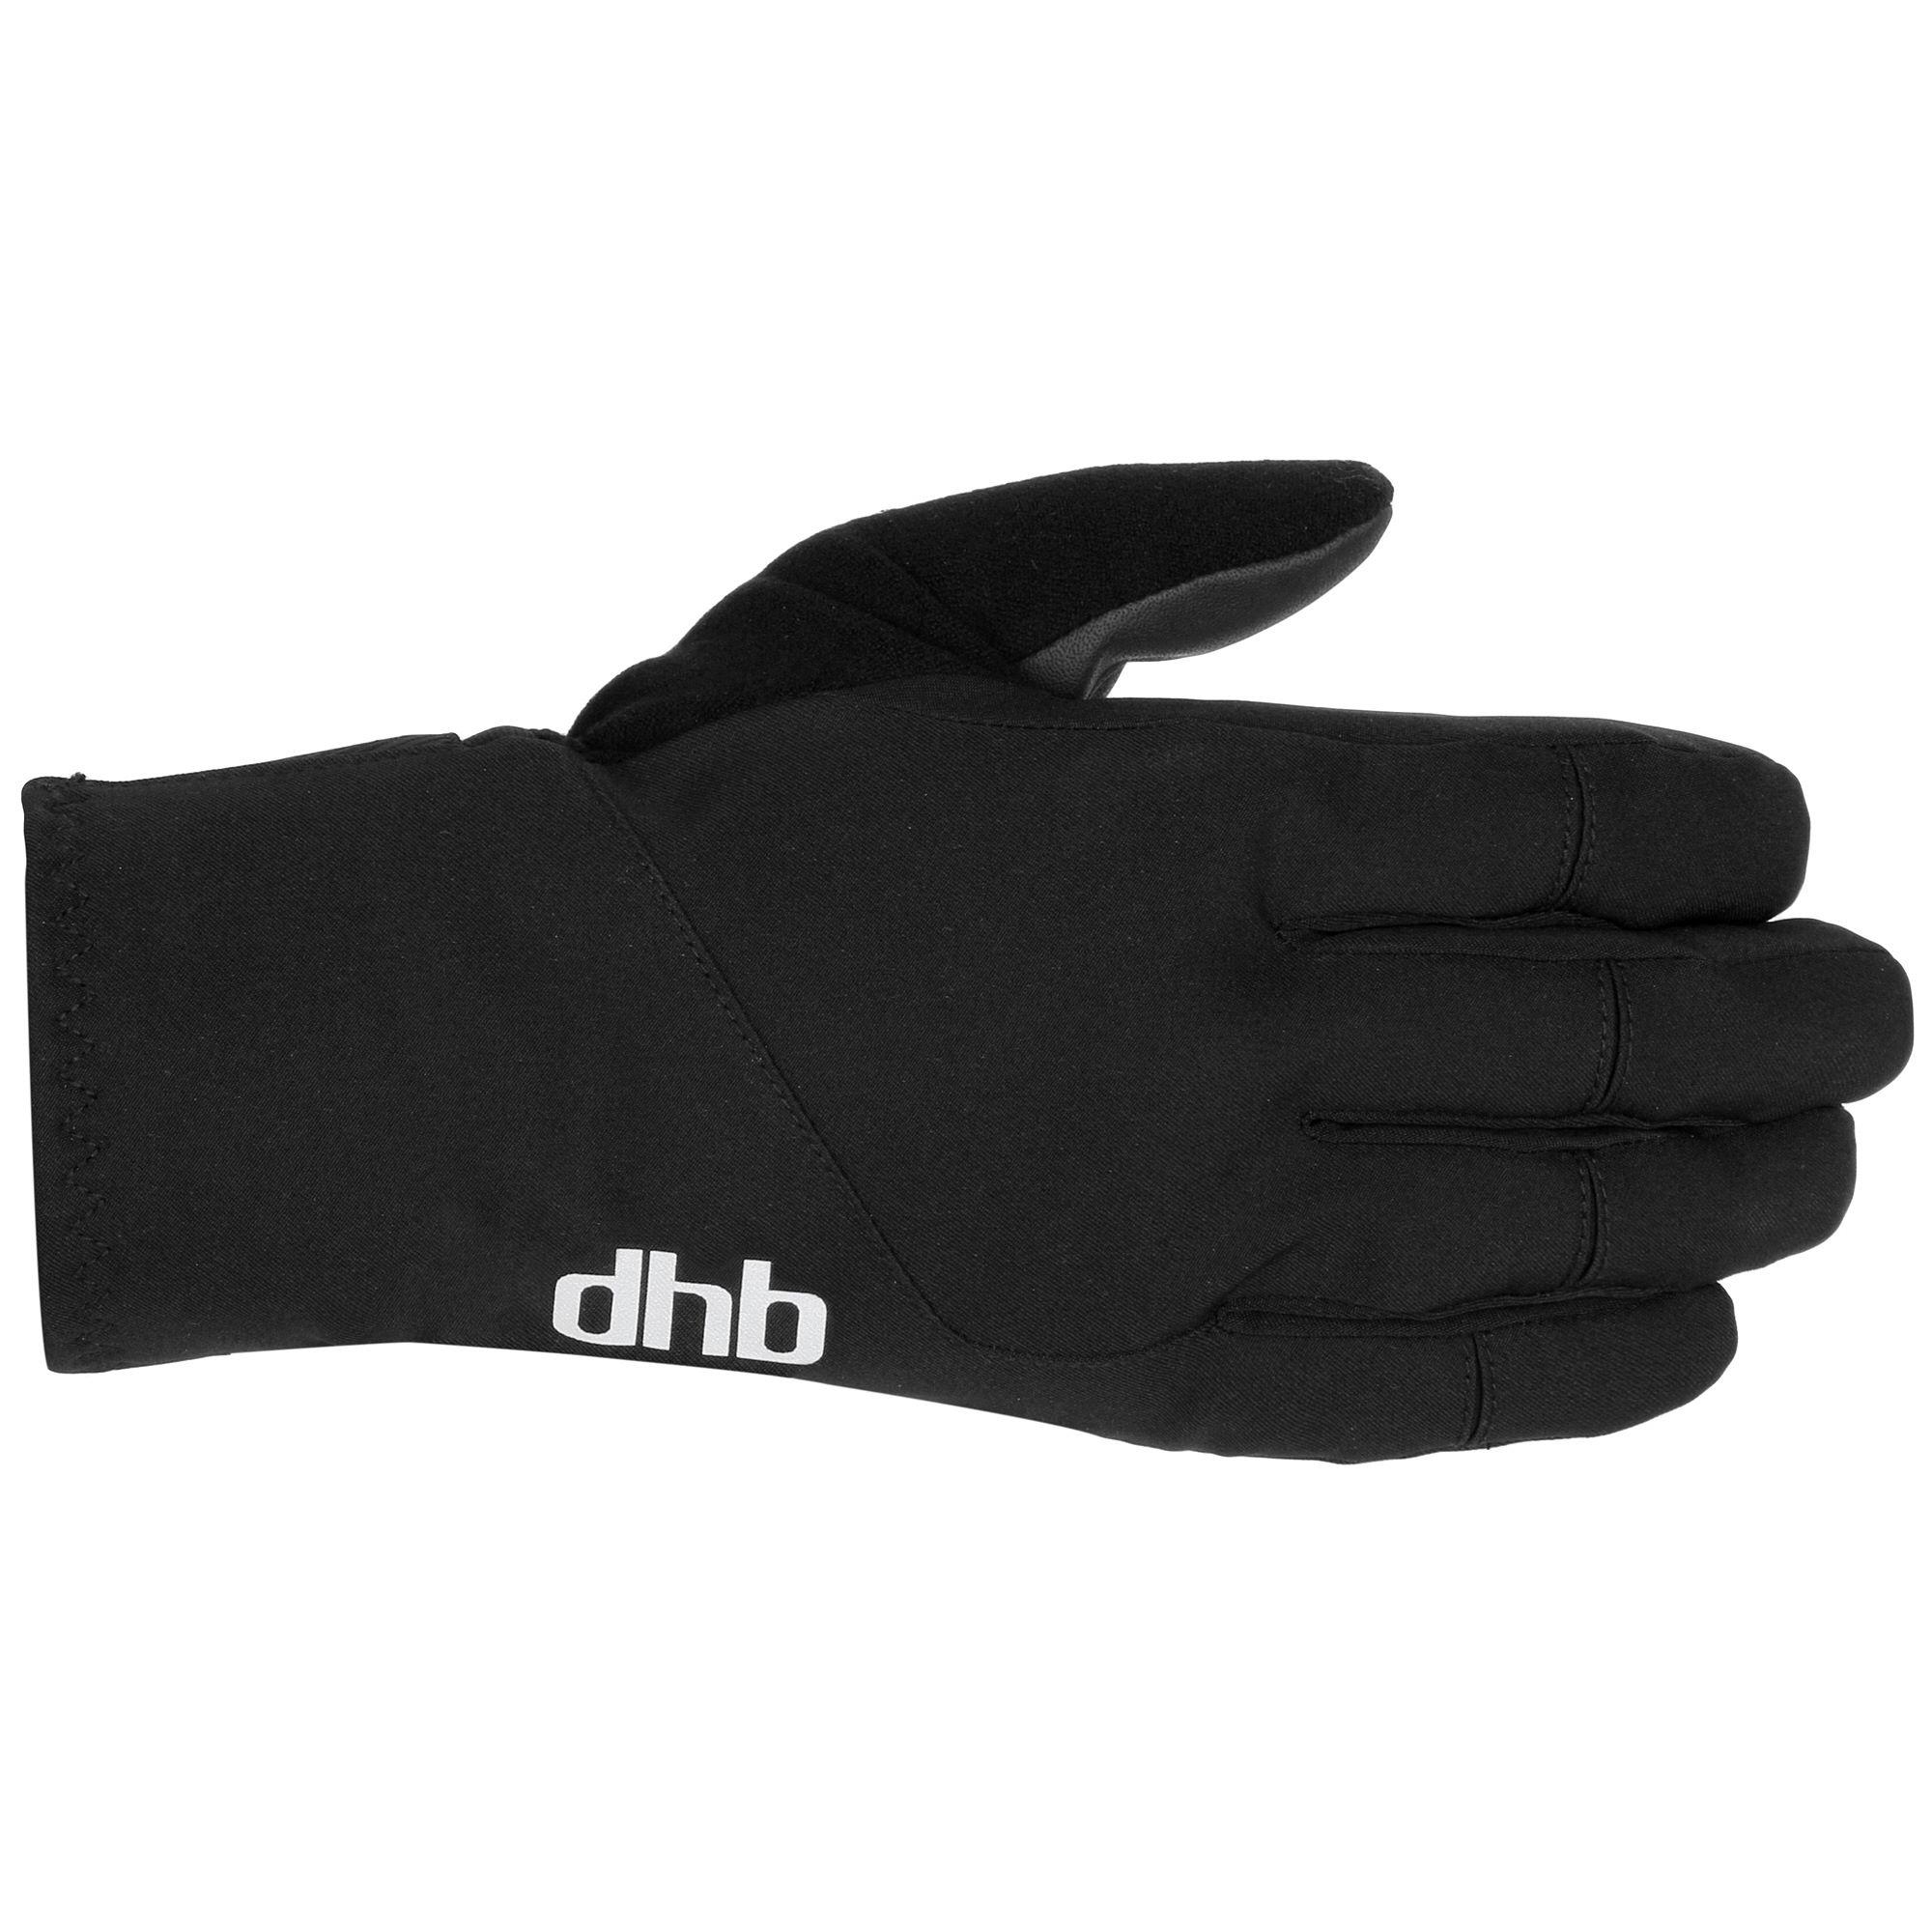 Dhb Extreme Winter Gloves - Black